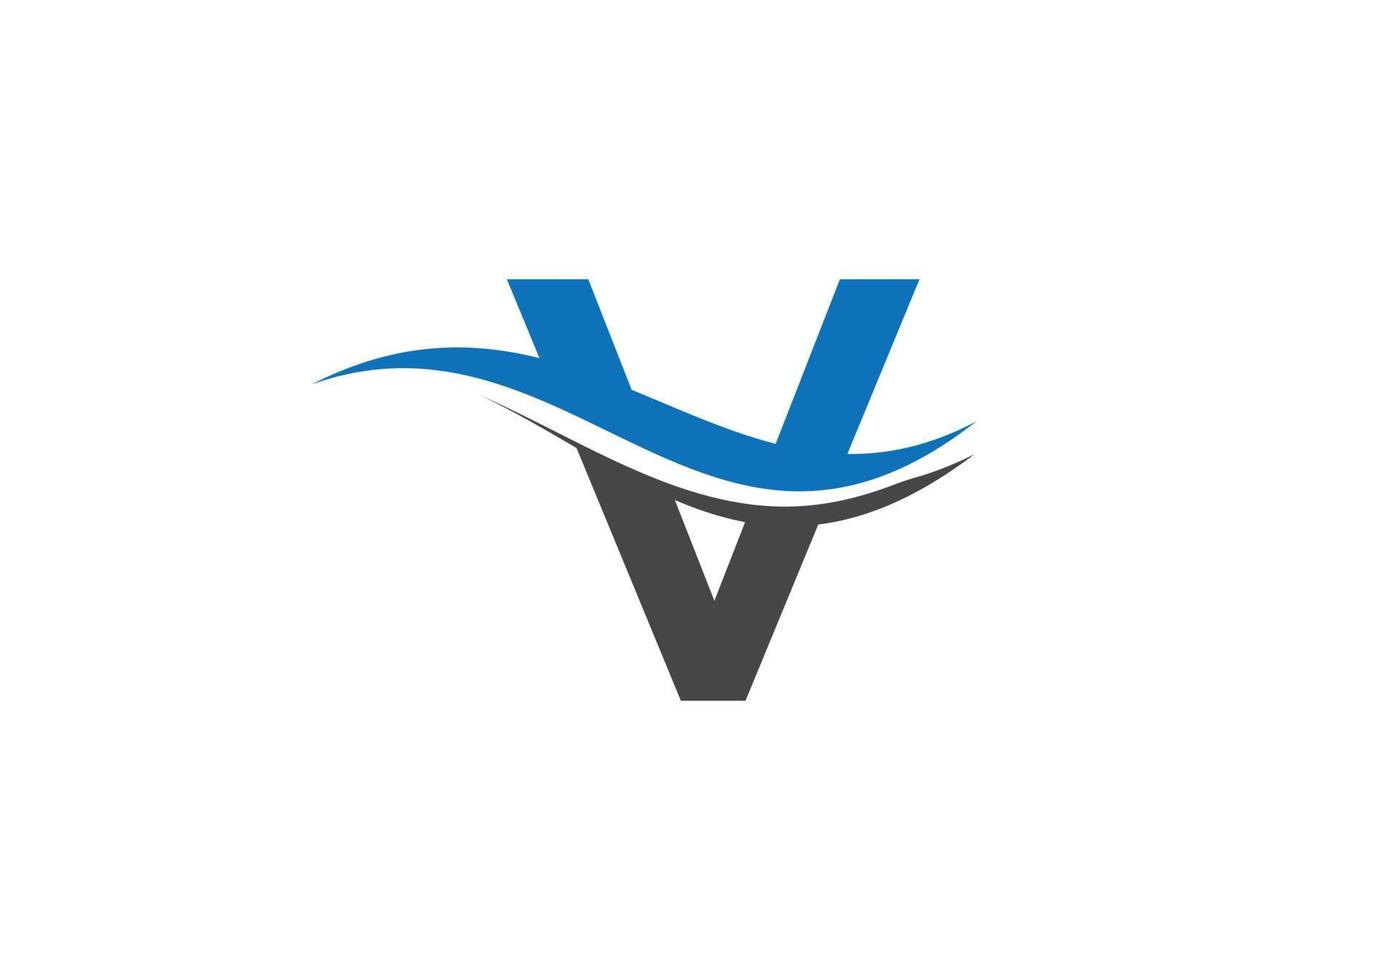 diseño de logotipo monograma v para identidad empresarial y empresarial vector